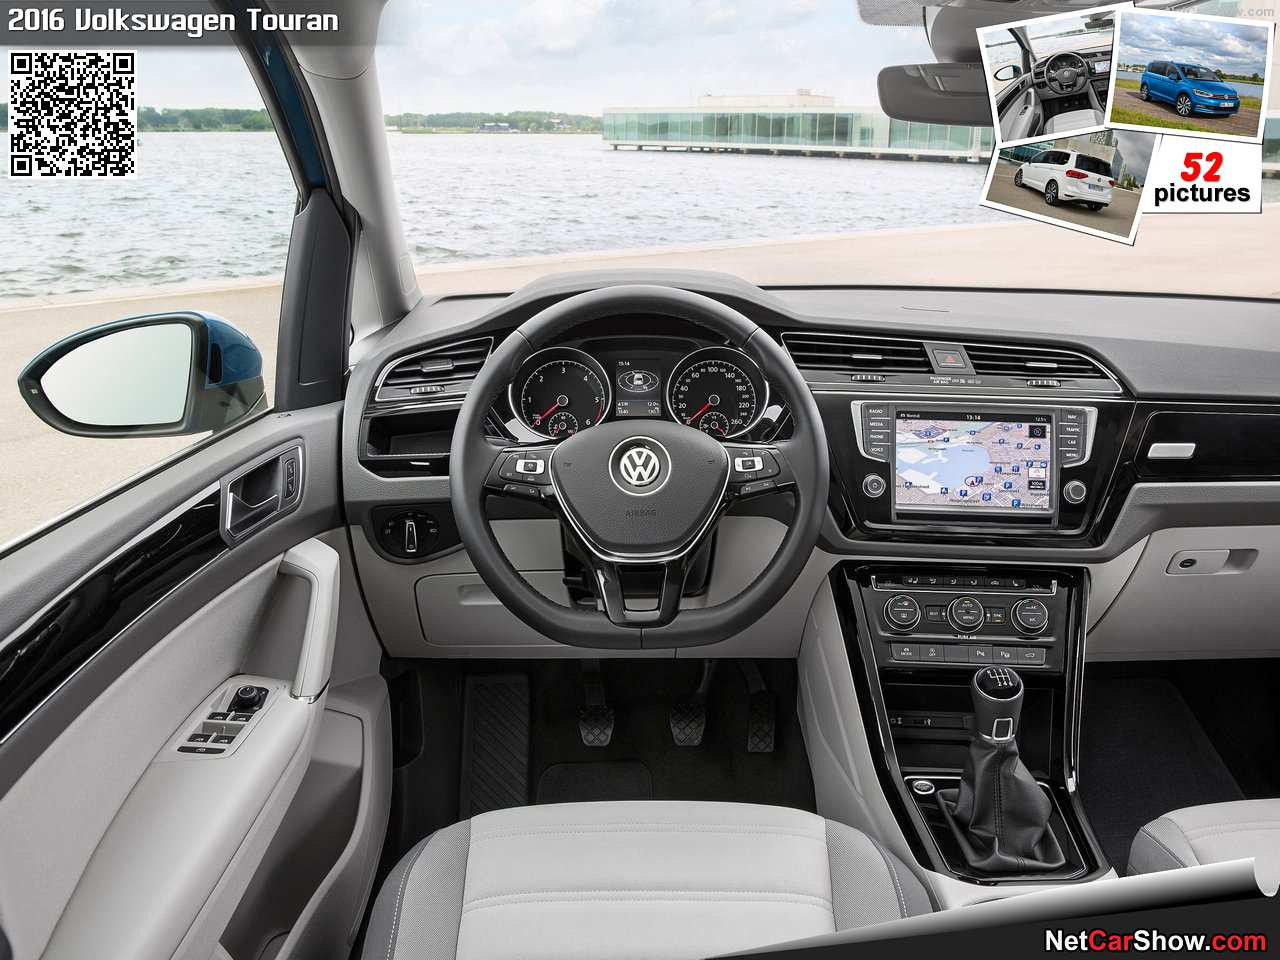 Volkswagen-Touran-2016-1280-1f.jpg